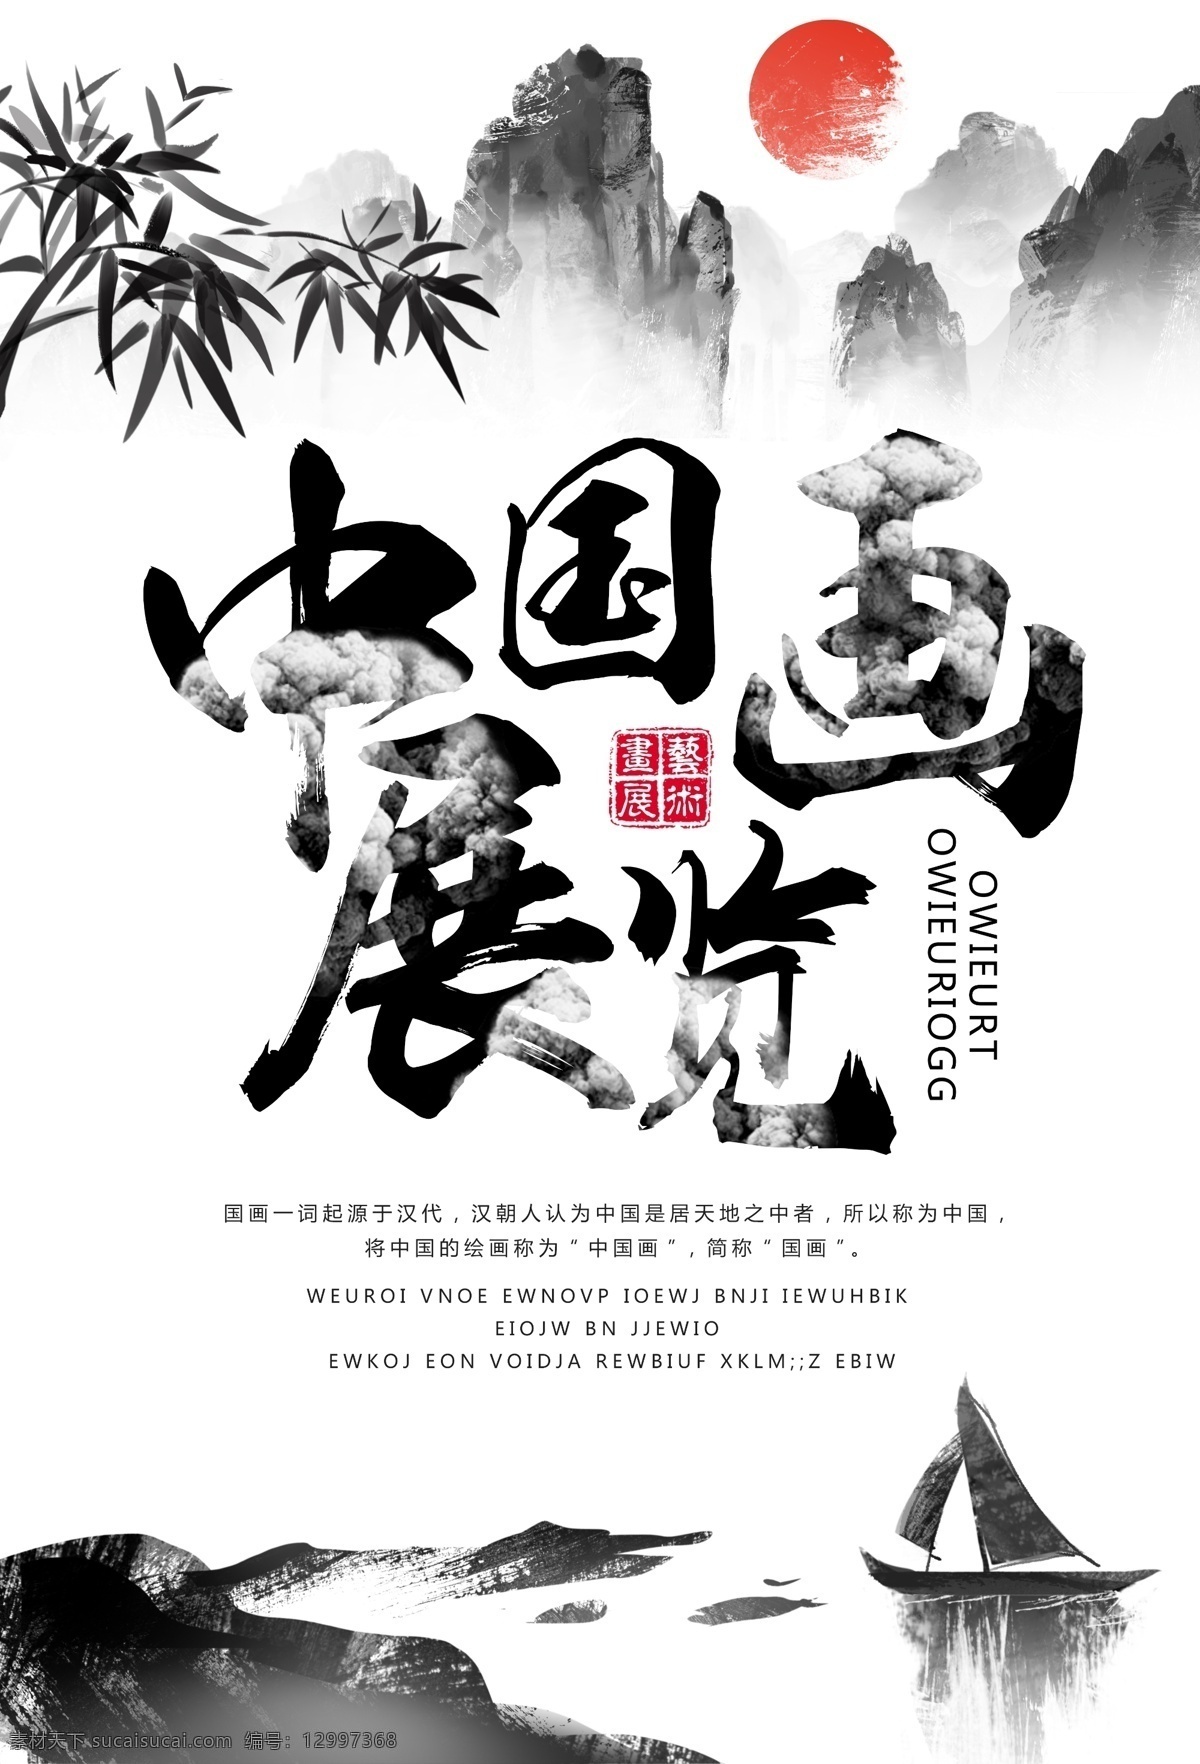 中国画展 画展 绘画 美术 国画 艺术展 会展 展览 中国风 中国画 画展海报 展览海报 水墨风 水墨山水 艺术画展